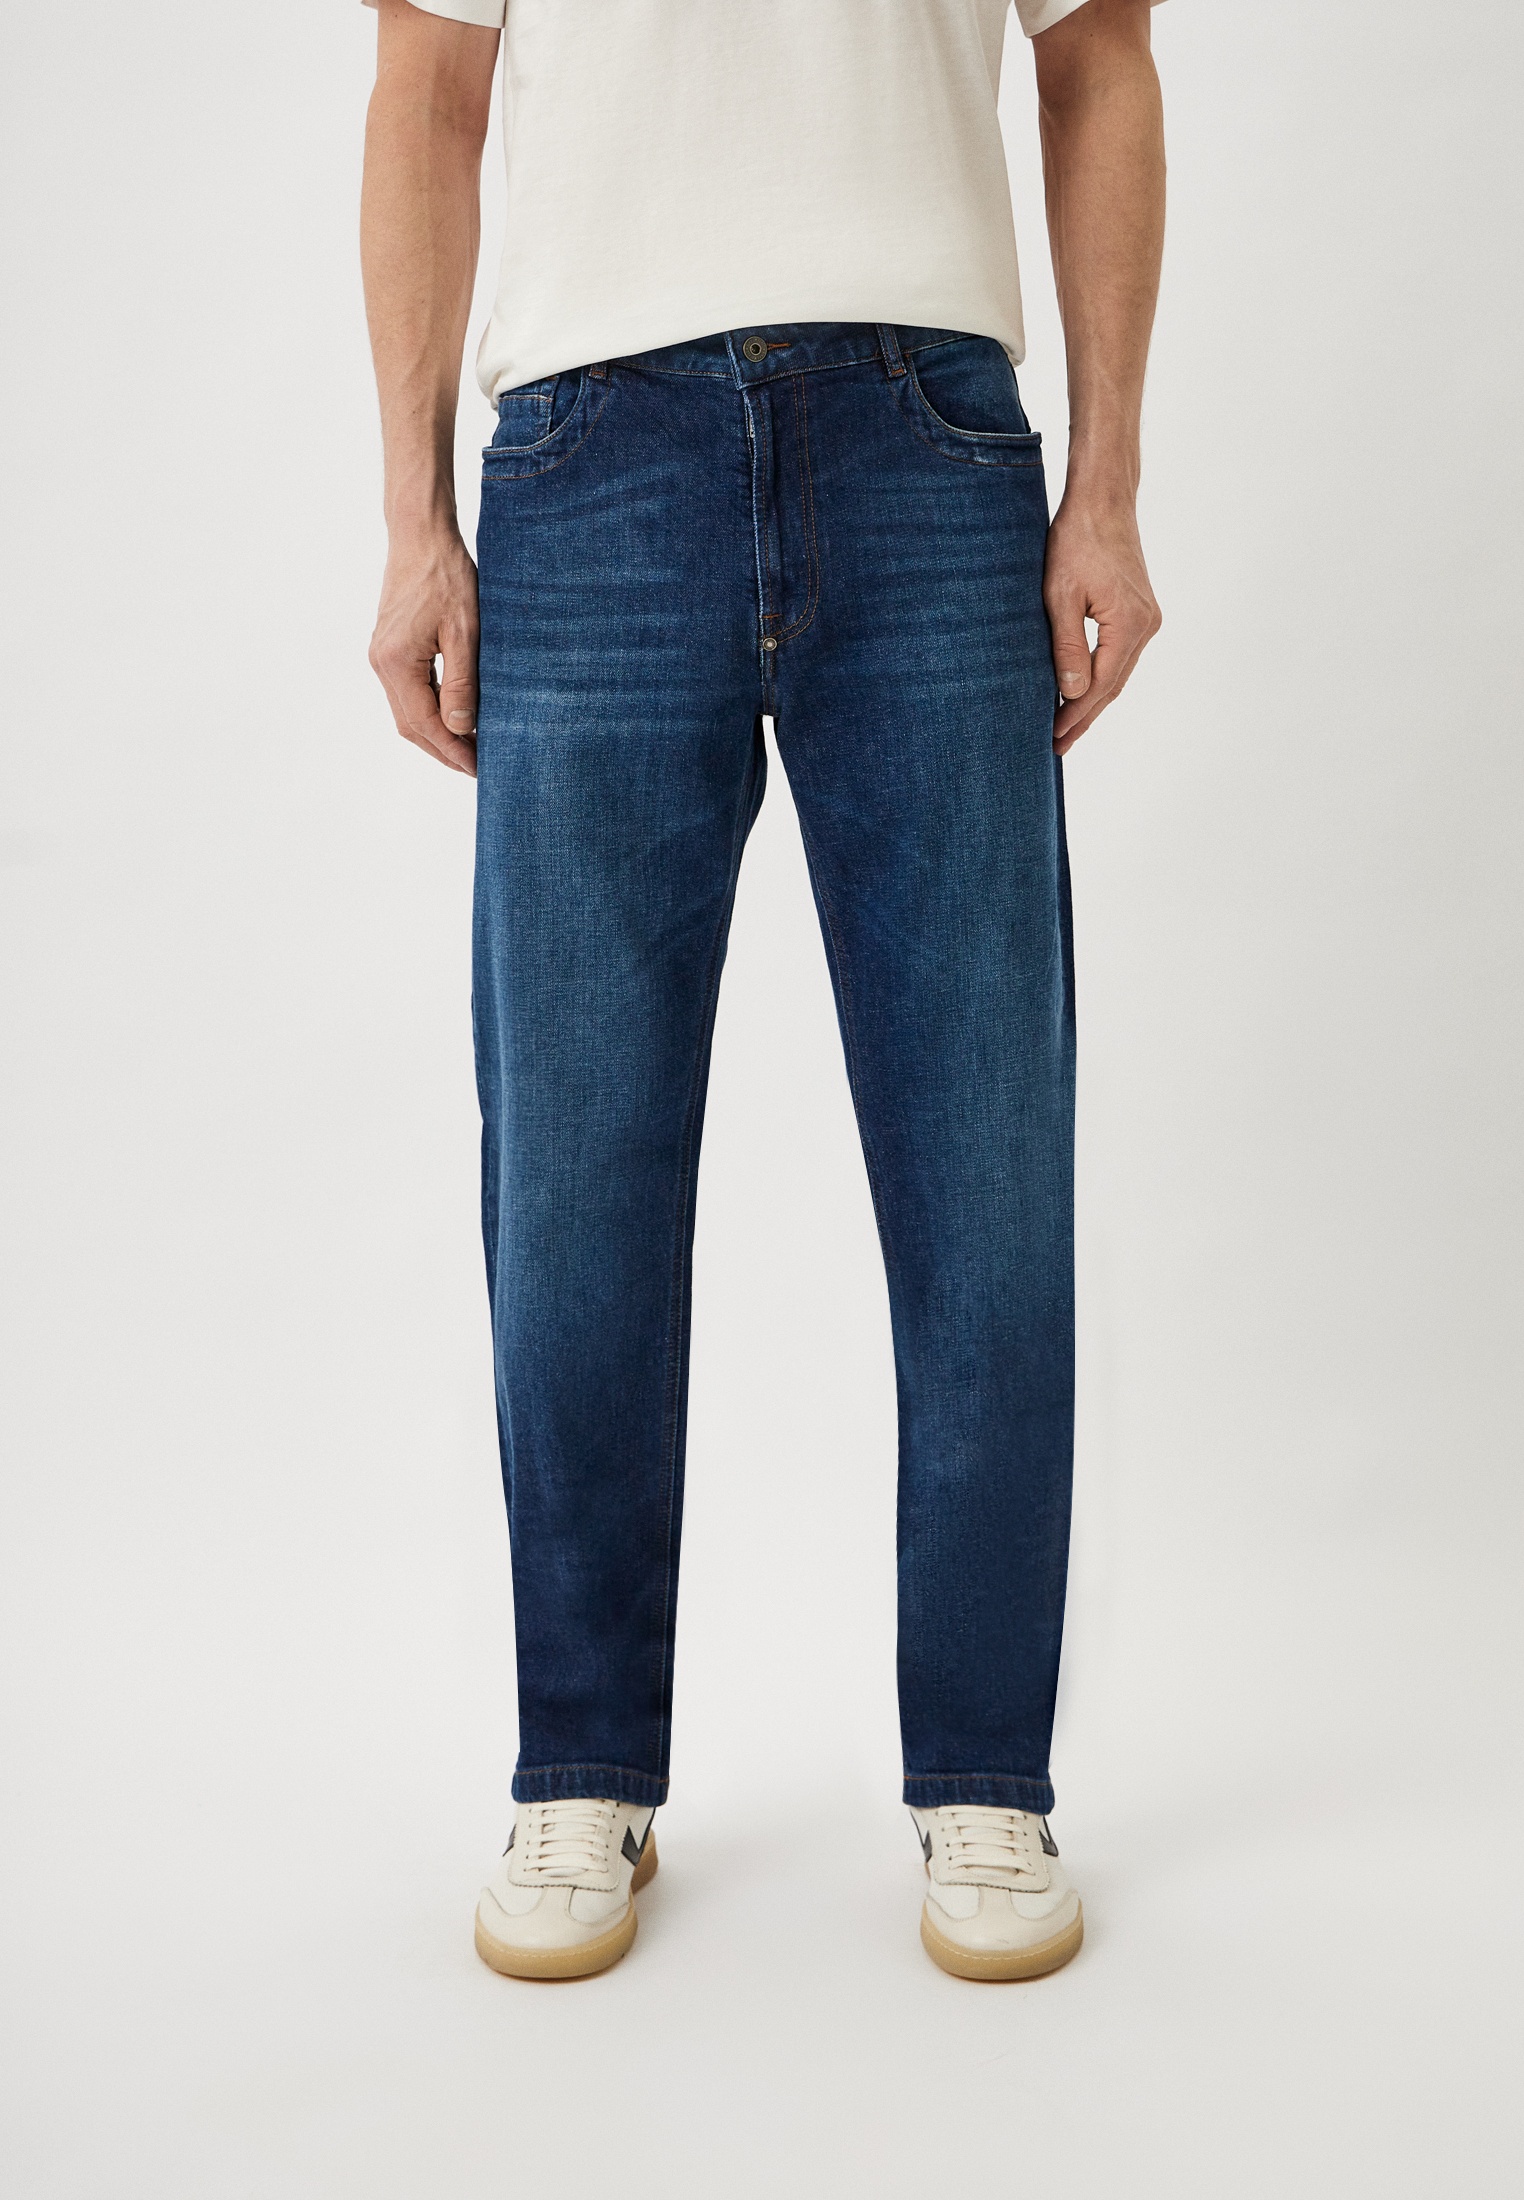 Мужские прямые джинсы Bikkembergs (Биккембергс) CQ10228S3976: изображение 5